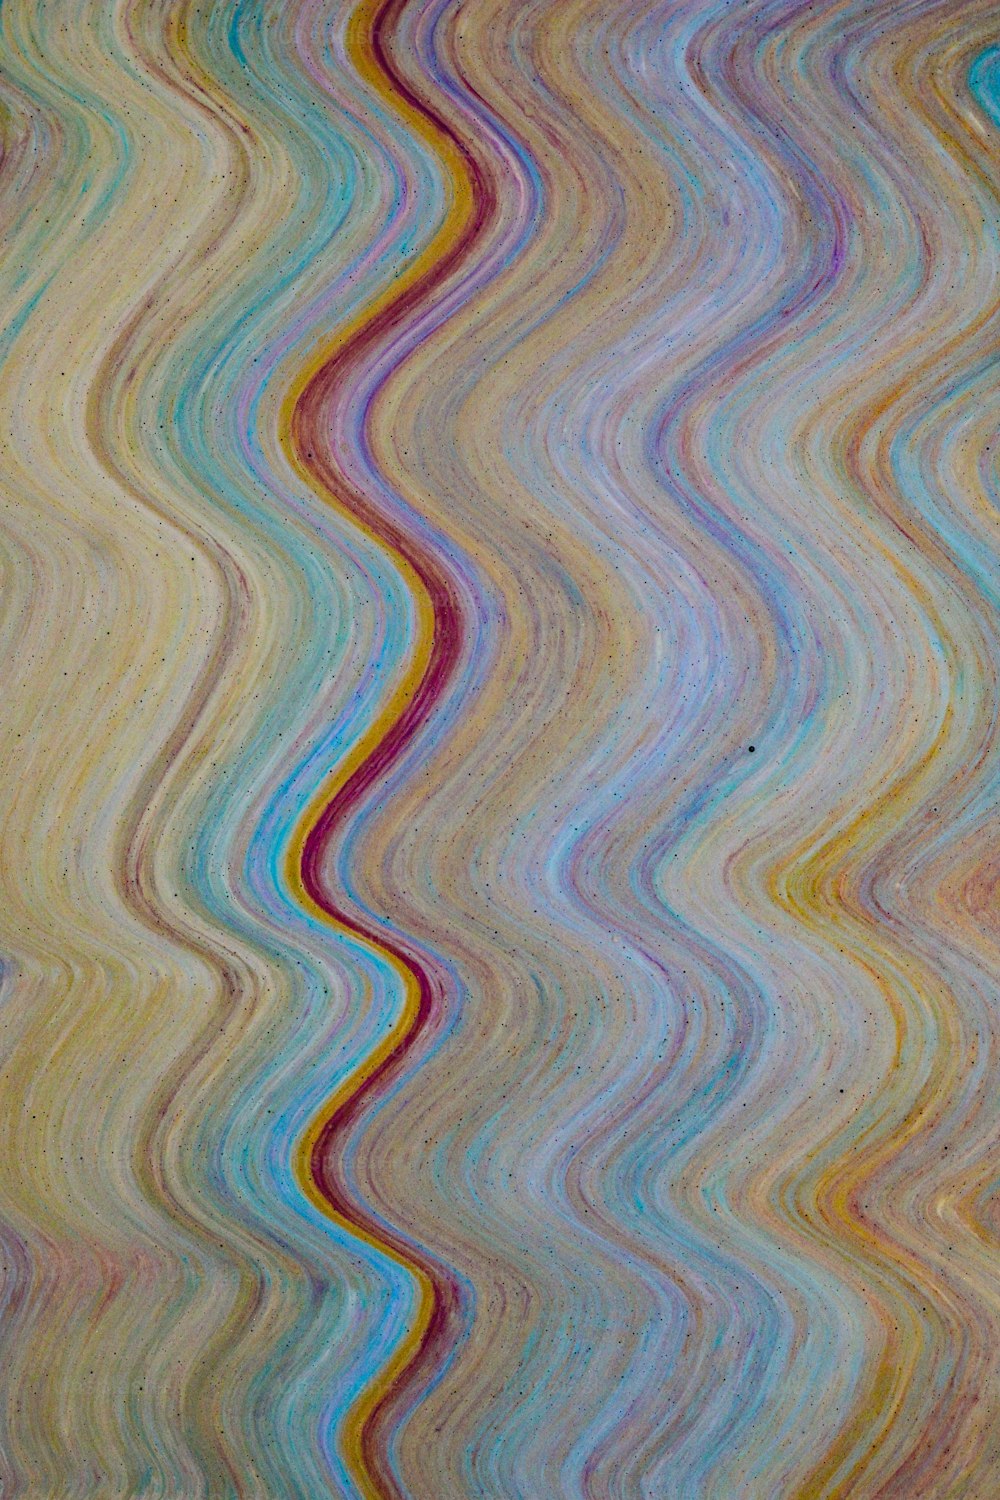 um padrão de onda multicolorido é mostrado nesta imagem